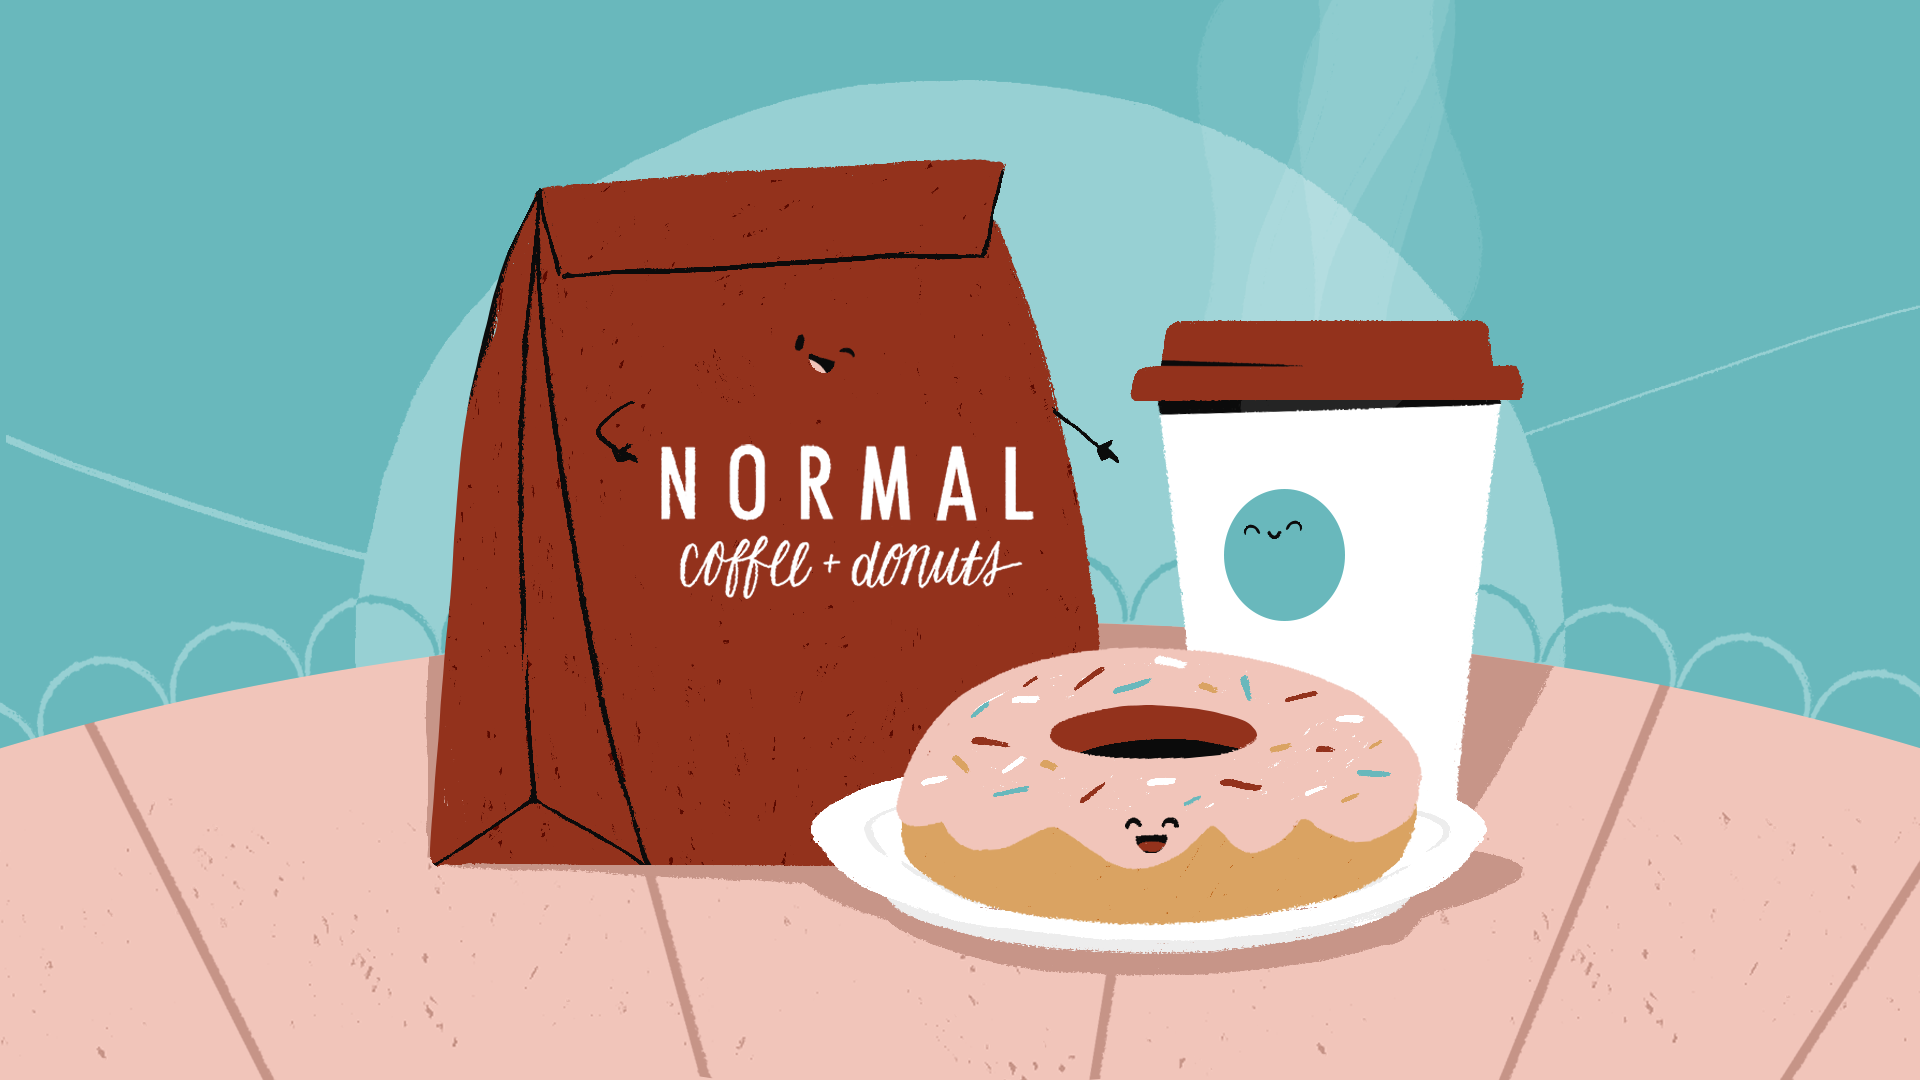 Ecran de fin de l'animation avec un sachet Normal Café + donuts, un café et un donuts sur une assiette posés sur une table. Les 3 éléments ont un petit visage et sourient